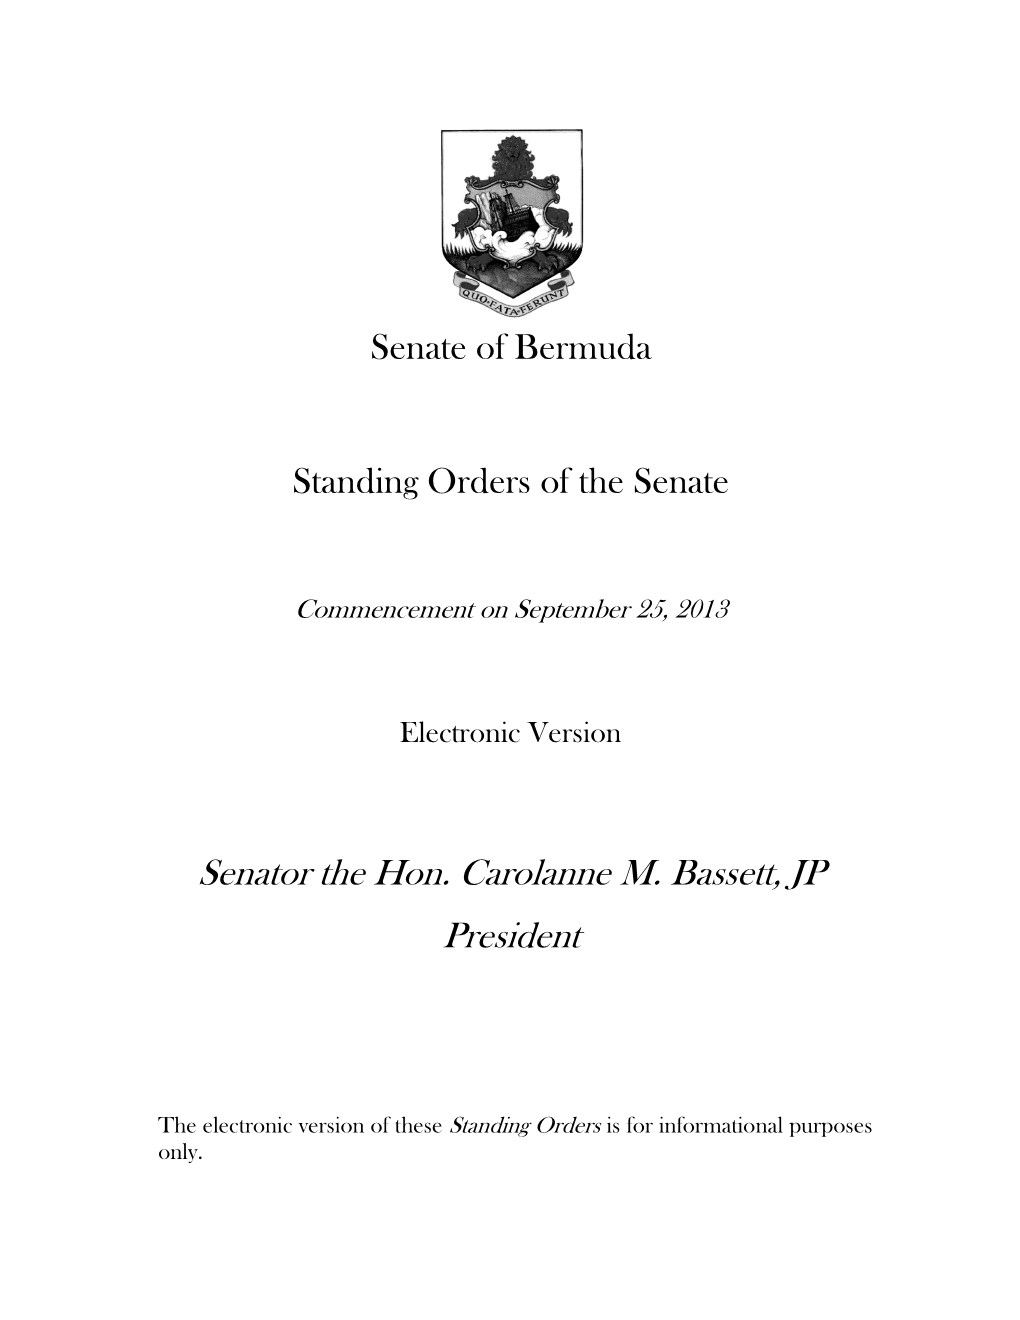 Standing Orders of the Senate of Bermuda